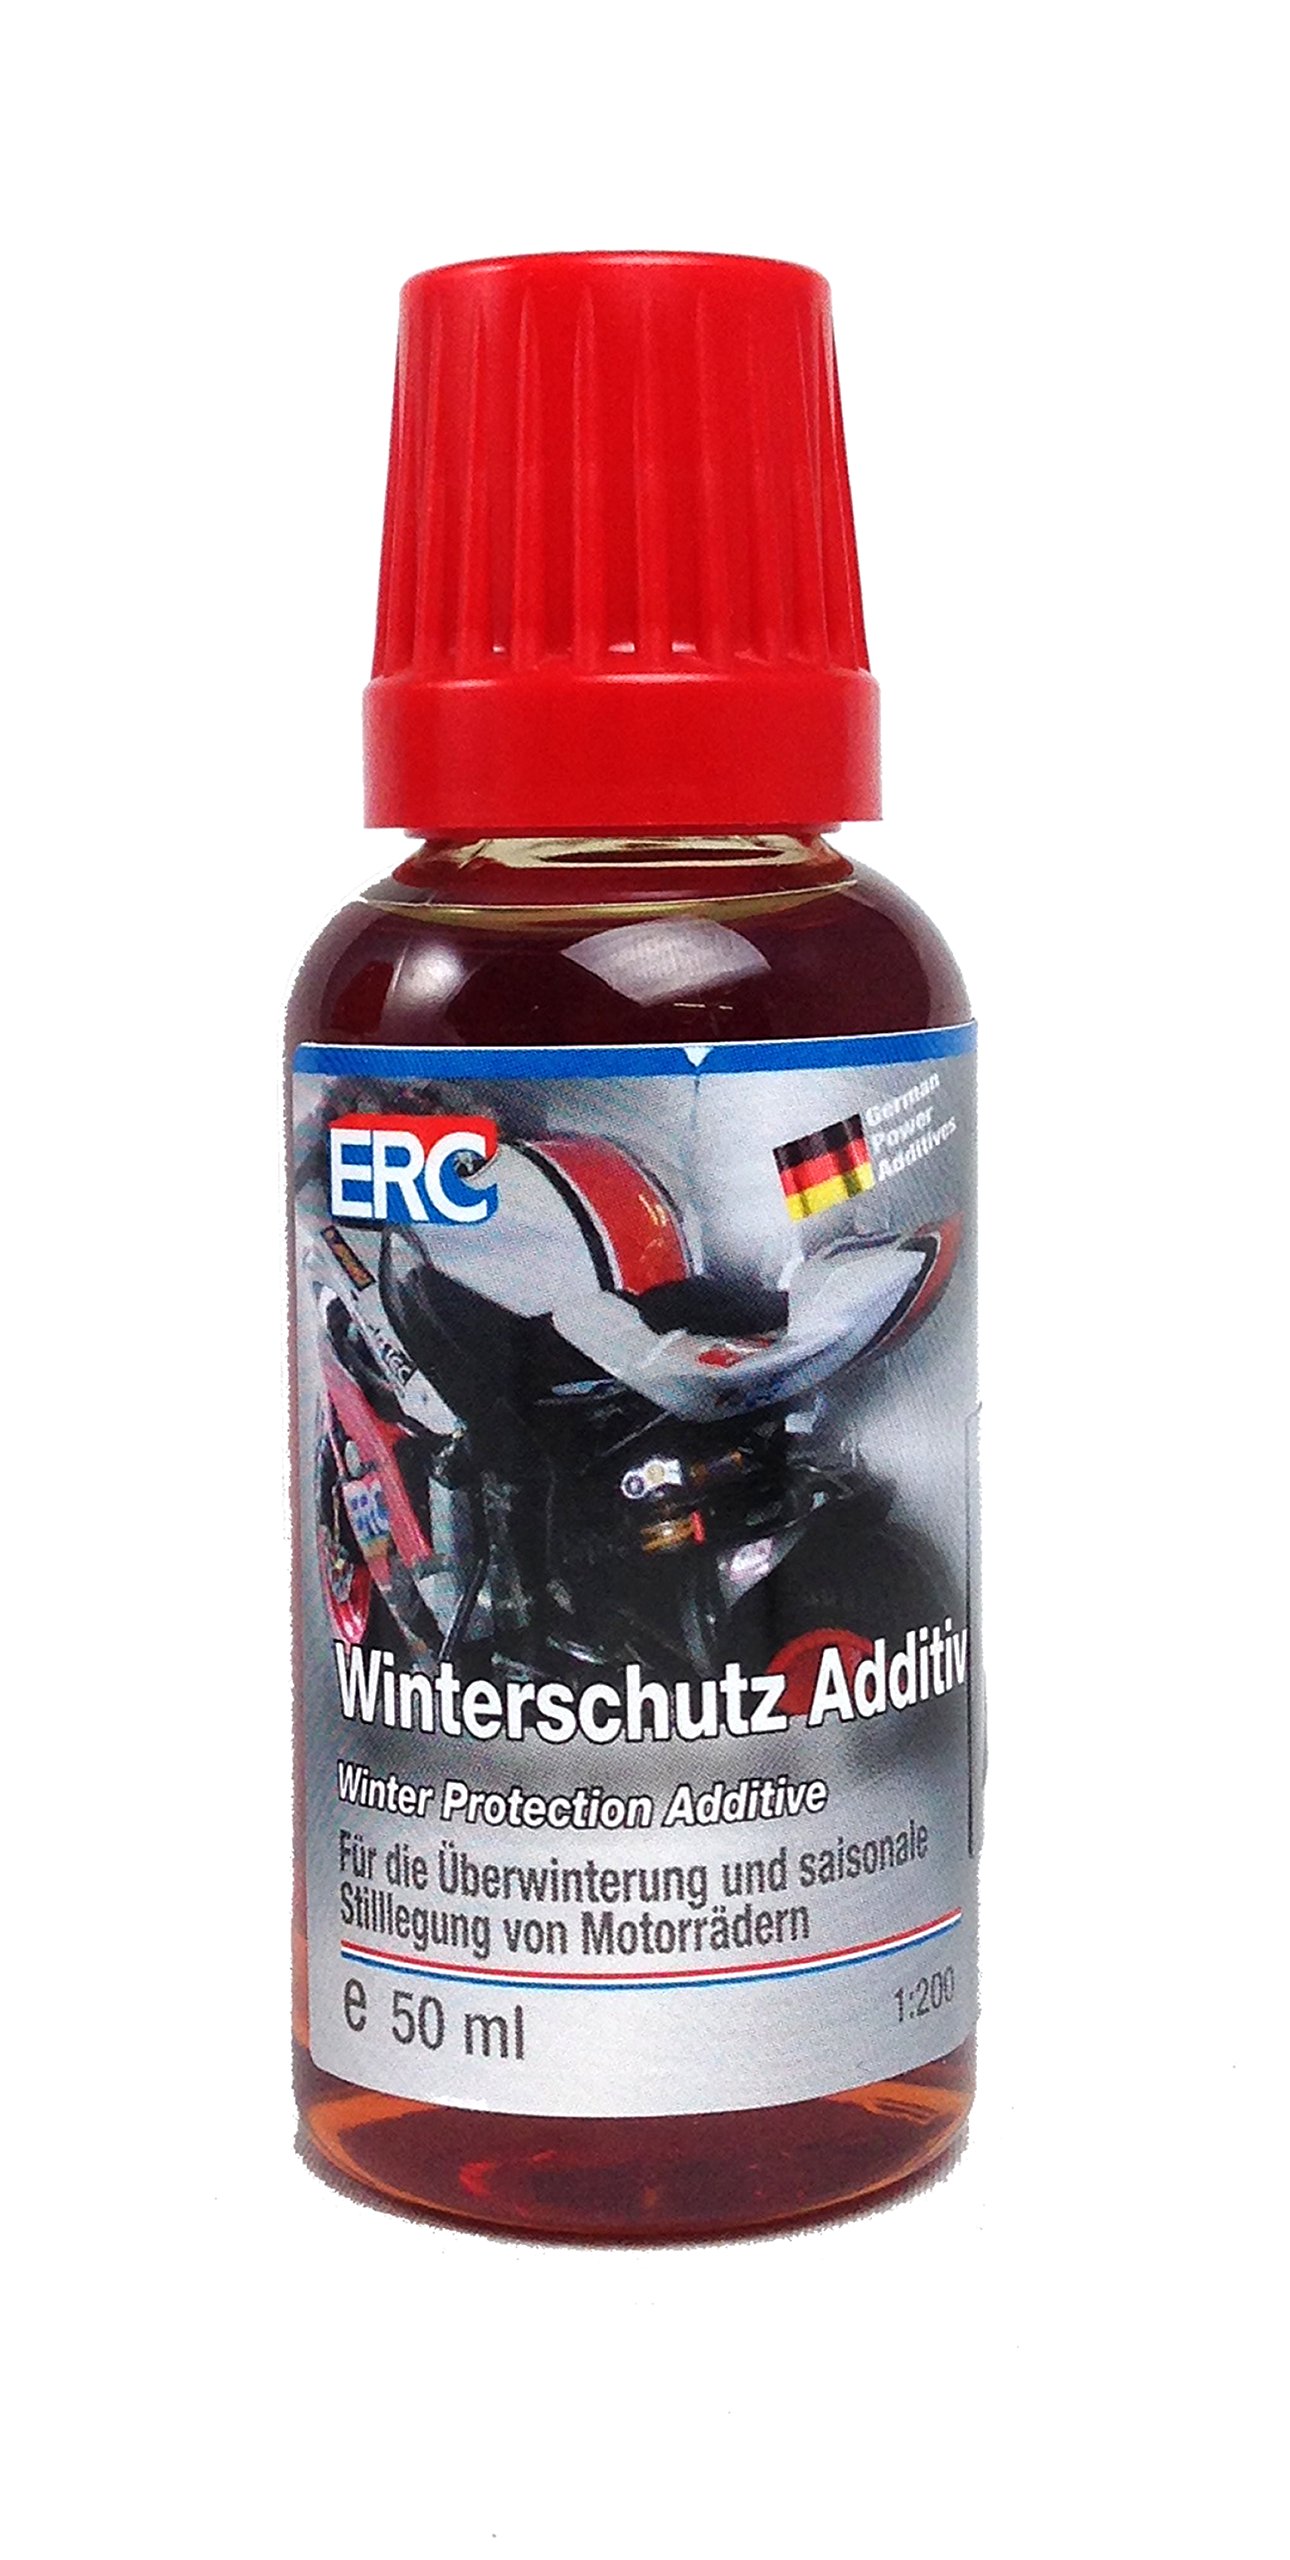 ERC Biker Winterschutz Additiv für Motorräder, Überwinterung und saisonale Stilllegung, 50ml von ERC